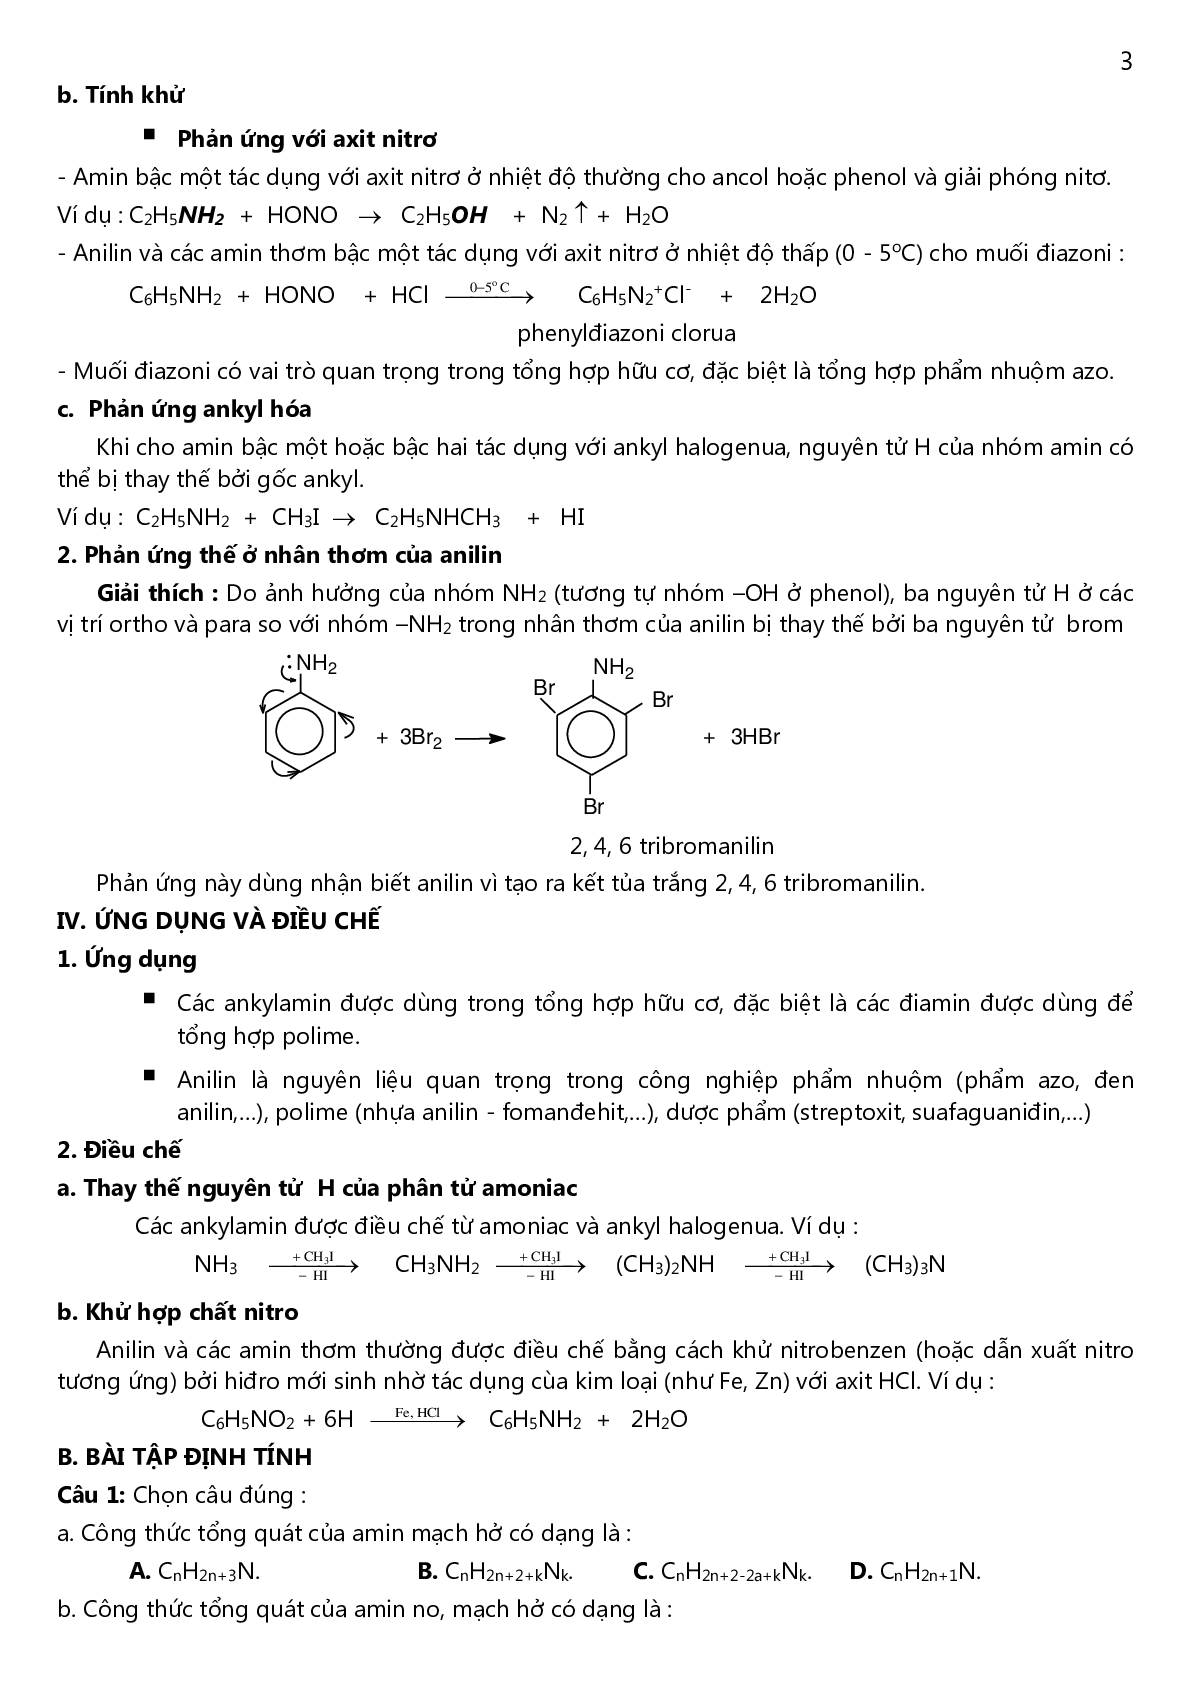 Lý thuyết, bài tập về amin-amino axit-protein có đáp án (trang 3)